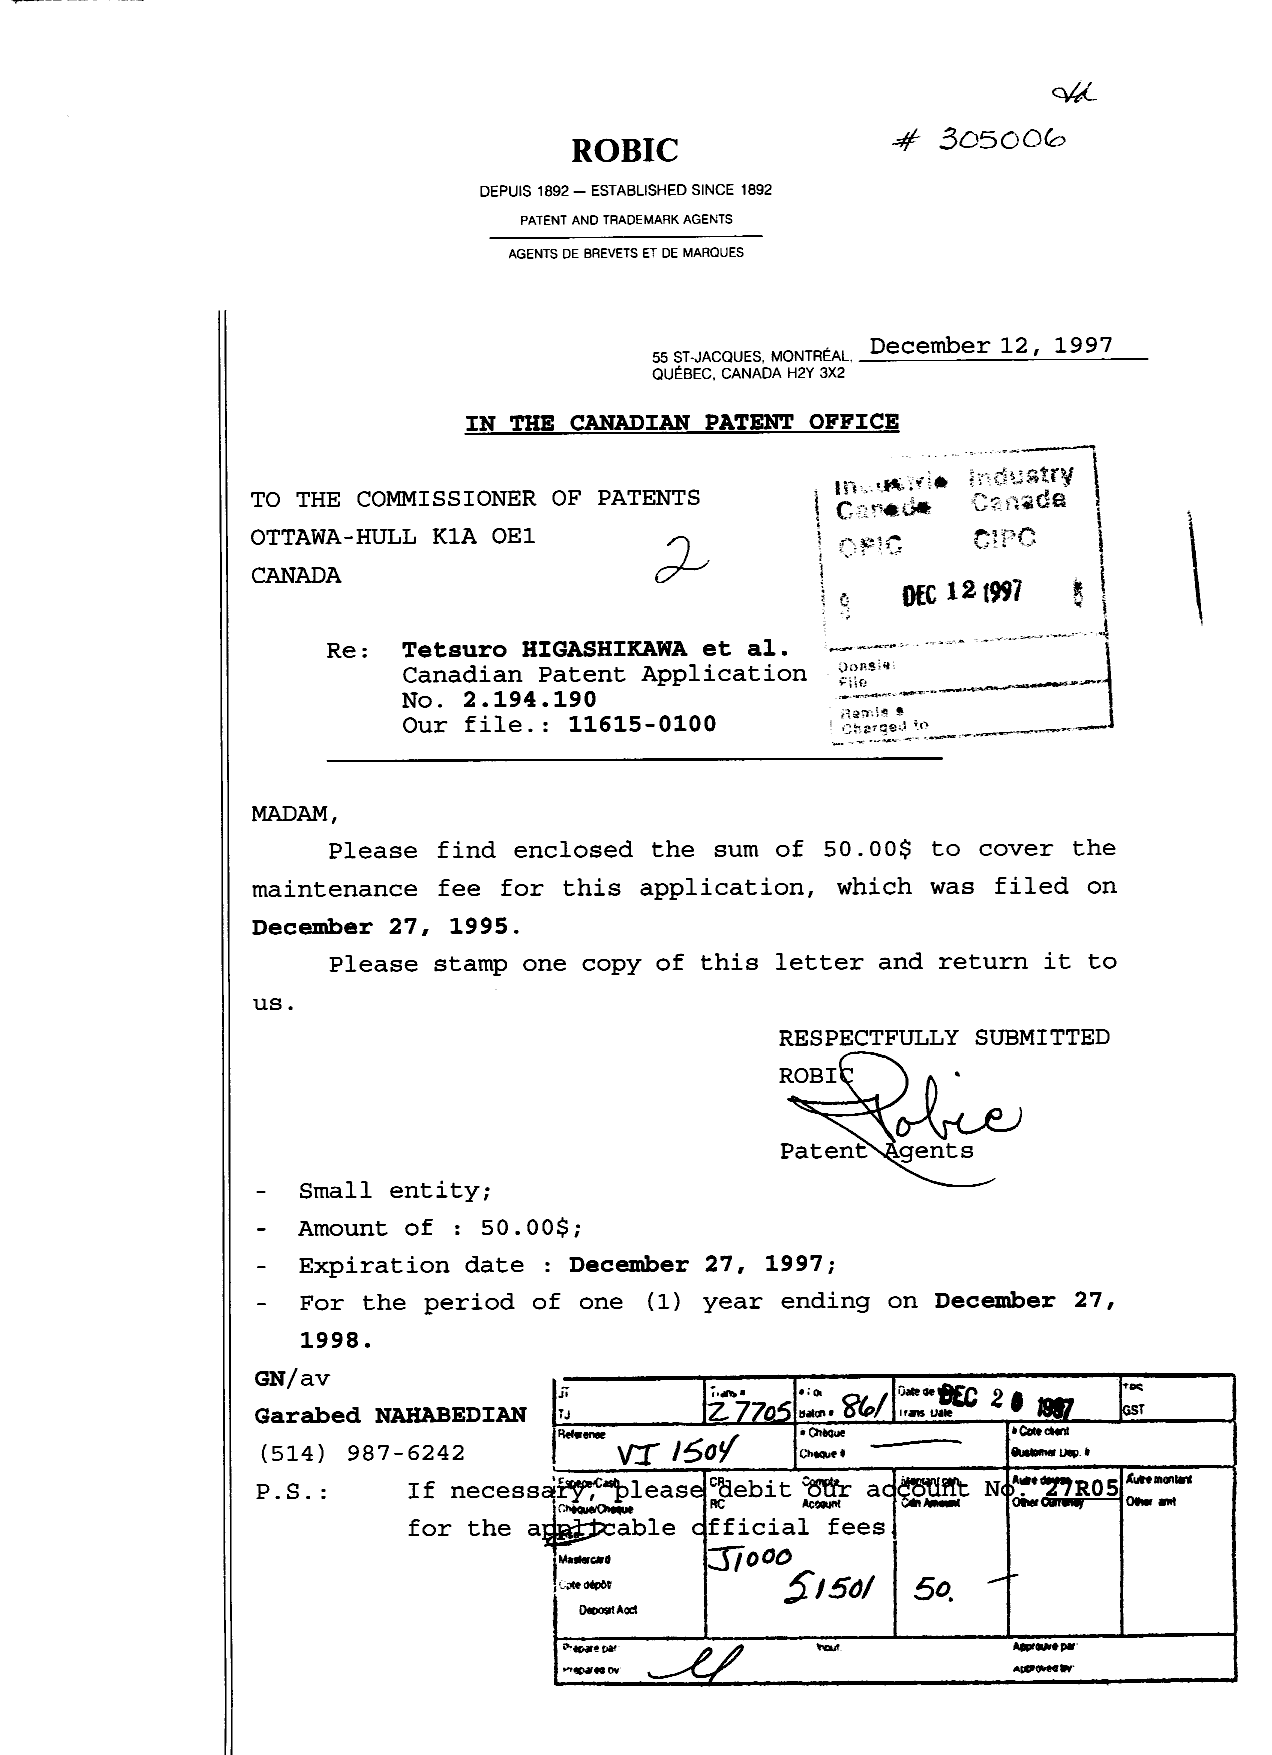 Document de brevet canadien 2194190. Taxes 19971212. Image 1 de 1